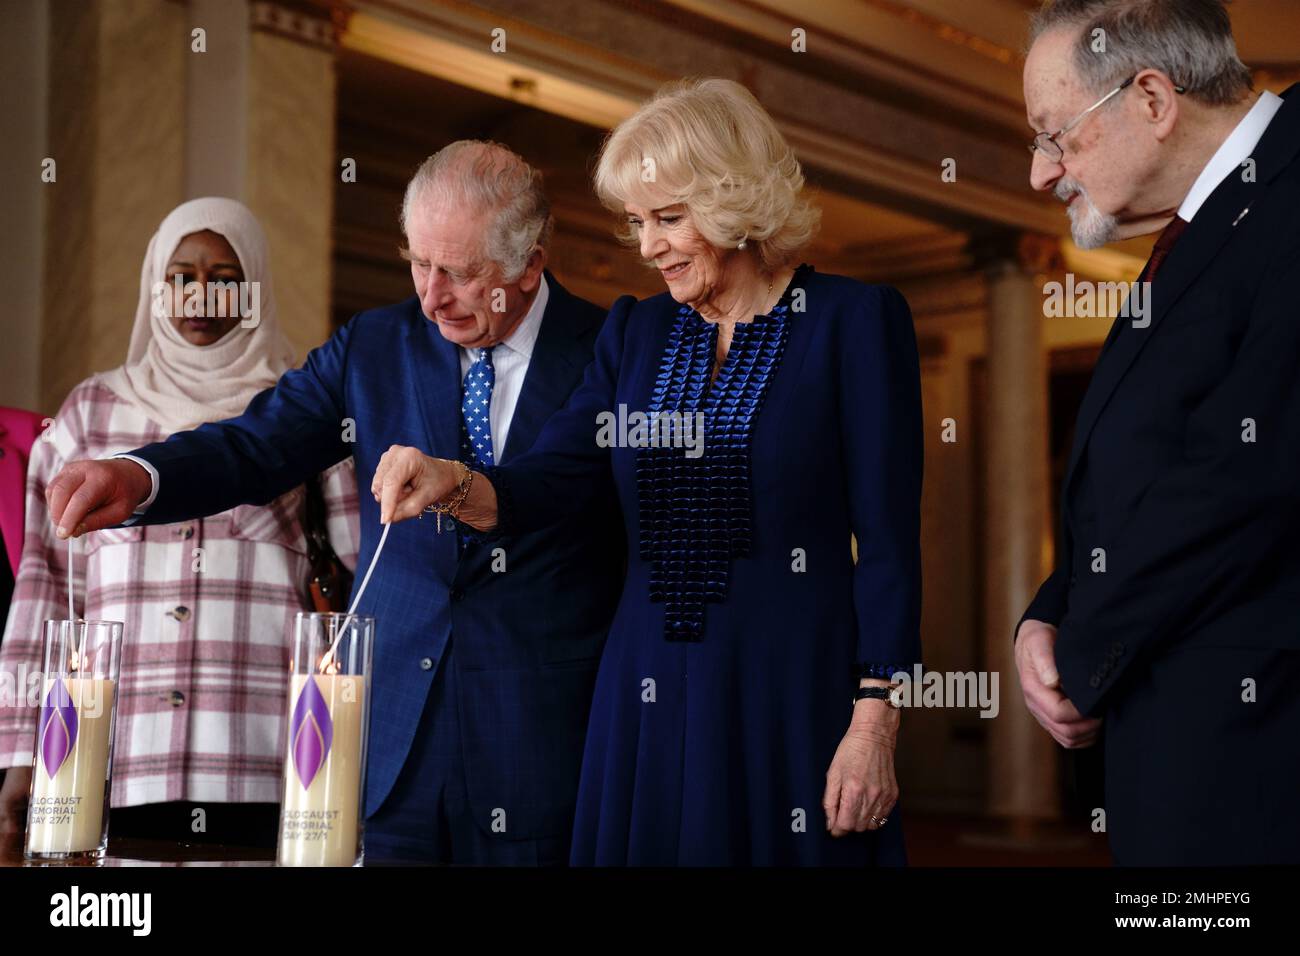 El rey Carlos III y la Reina consorte encienden una vela en el Palacio de Buckingham, Londres, para conmemorar el Día de los Caídos del Holocausto, junto al sobreviviente del Holocausto, el Dr. Martin Stern, y un sobreviviente del genocidio de Darfur, Amouna Adam. Fecha de la fotografía: Viernes 27 de enero de 2023. Foto de stock